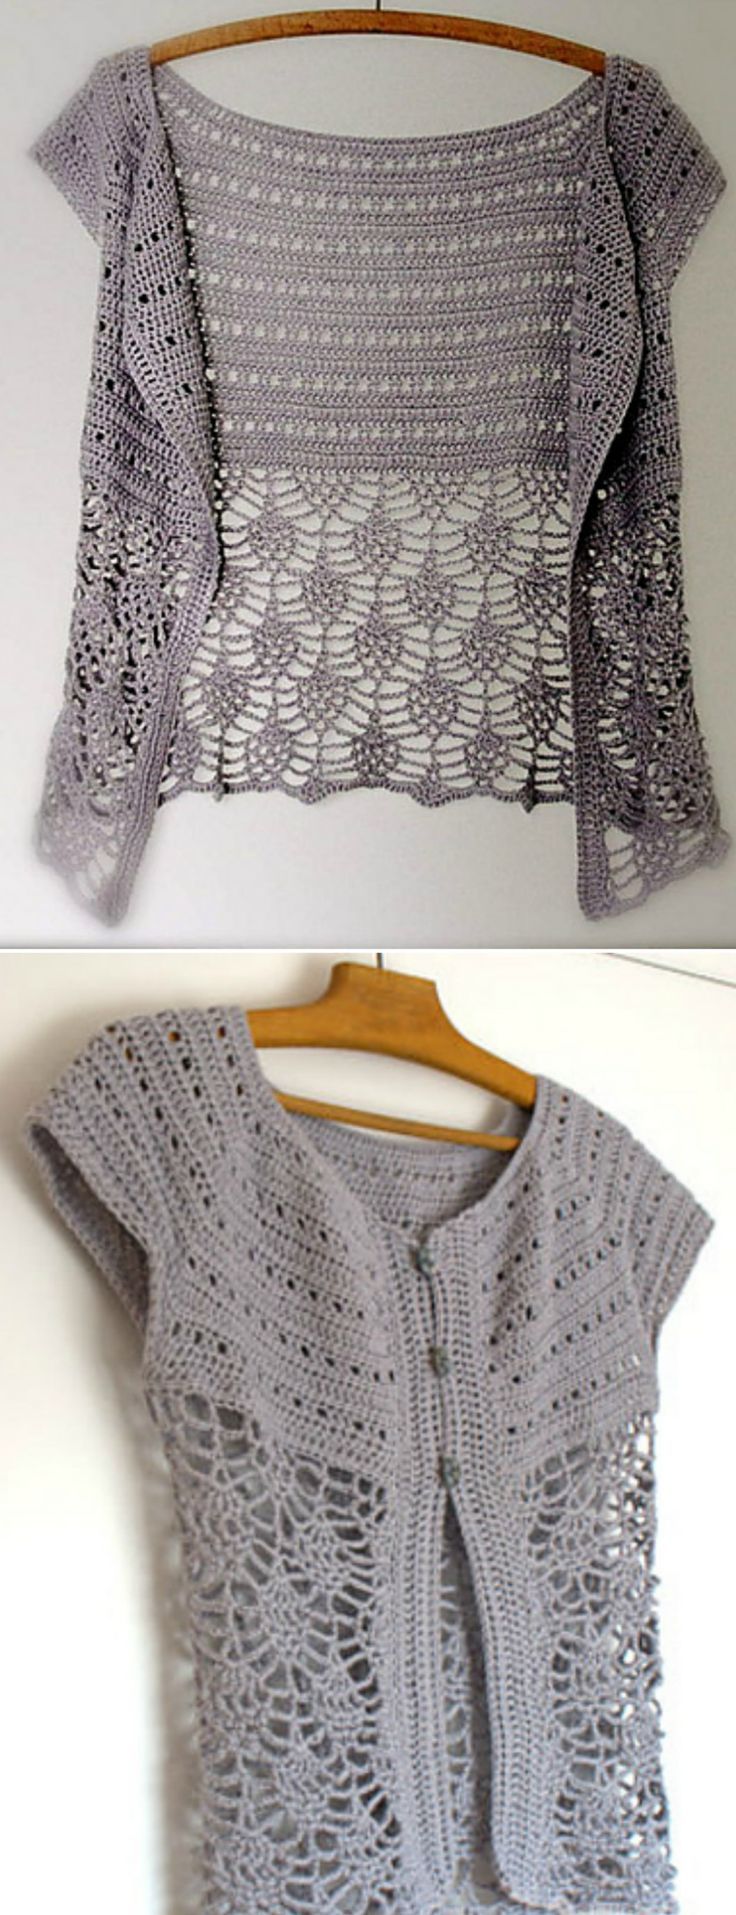 DIY-Crochet-Lace-Jacket-Pattern-Ideas.jpg